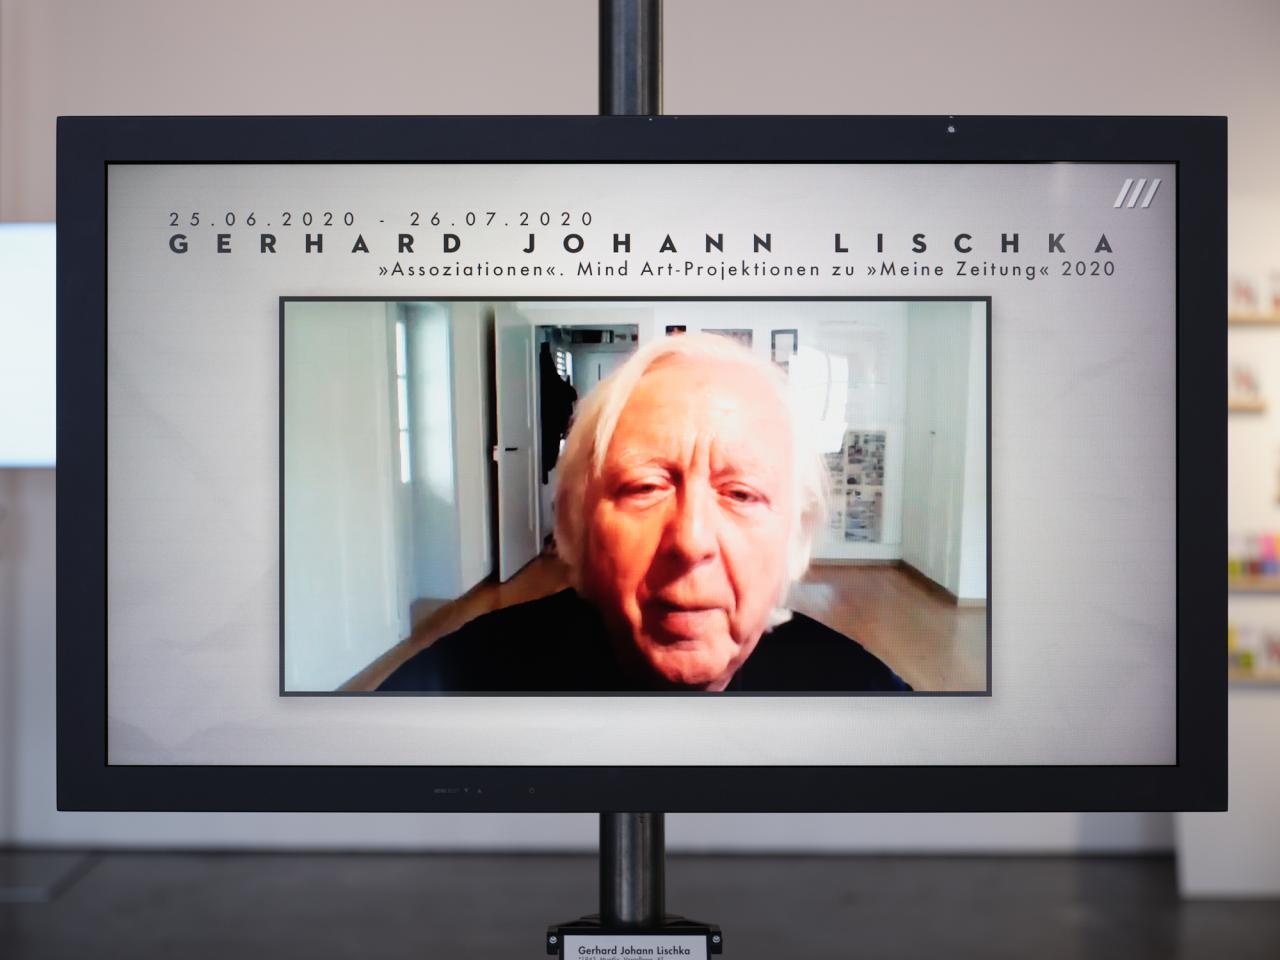 Zu sehen ist ein Bildschirm, auf dem das Gesicht eines alten Mannes spielt. Über dem Kopf des Mannes steht der Name Gerhard Johann Lischka. 